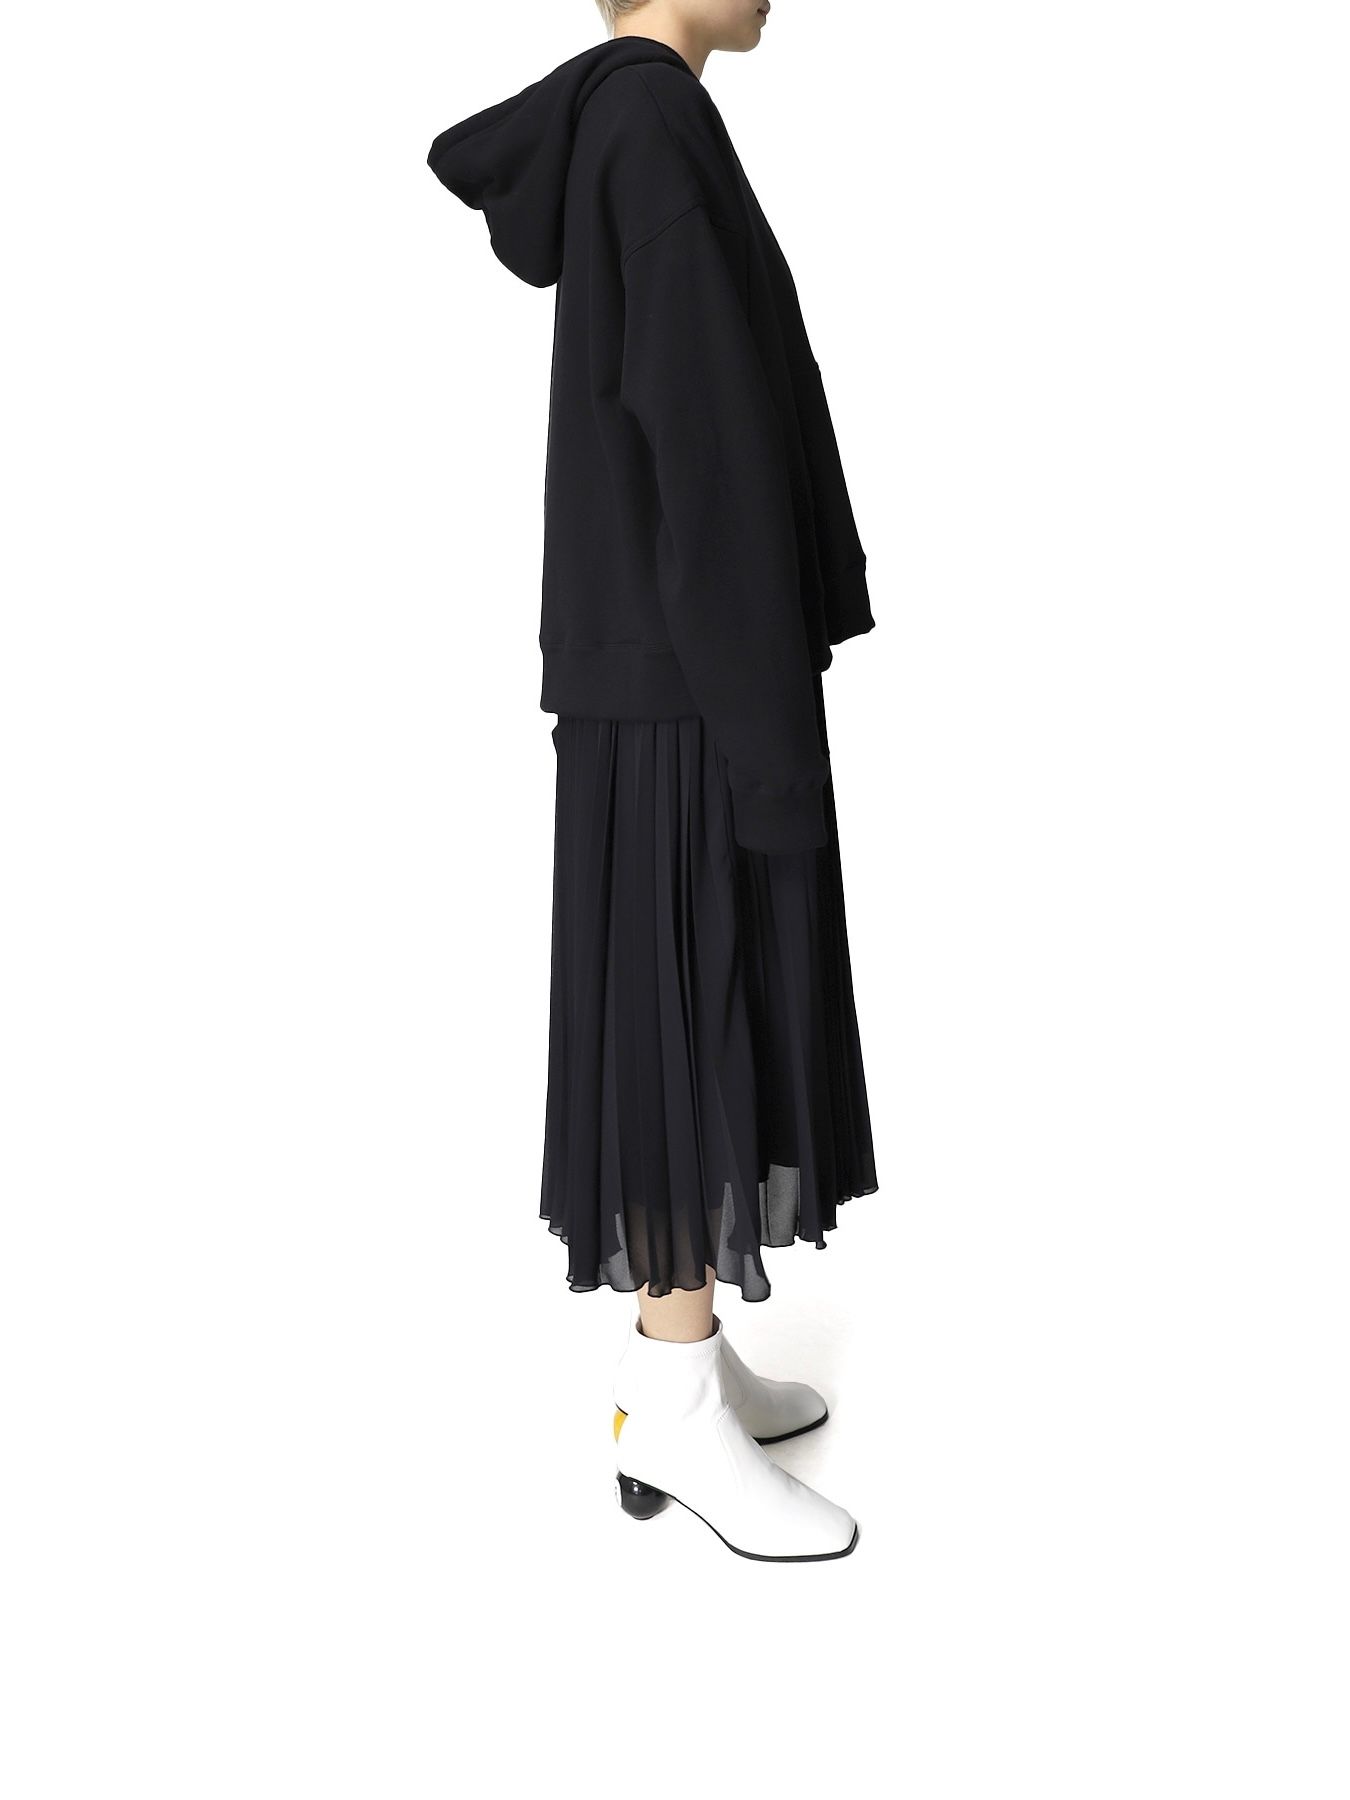 Maison MIHARA YASUHIRO - プリーツスカート つなぎパーカードレス 